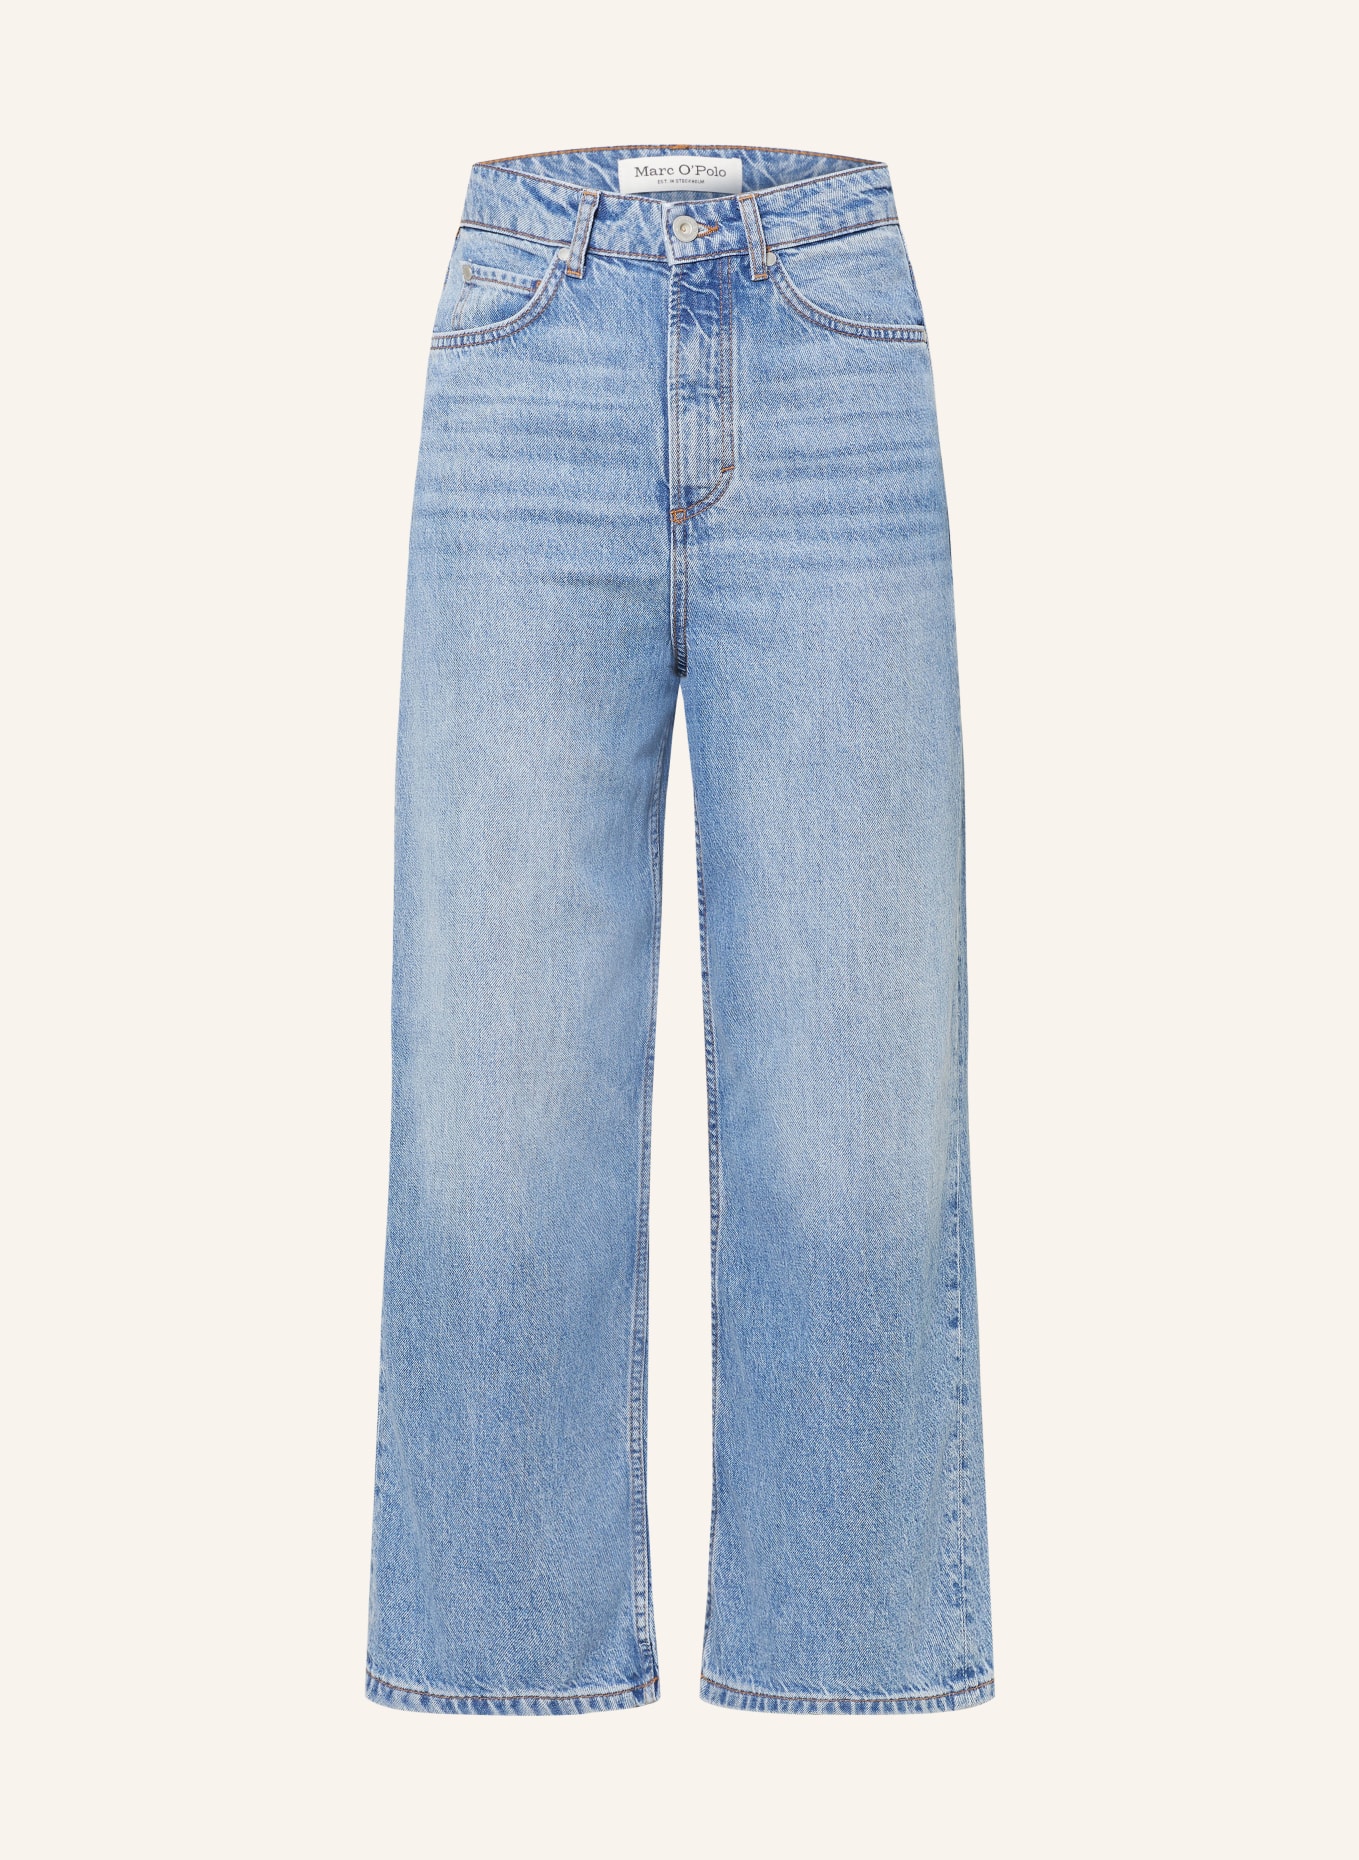 Marc O'Polo Jeans-Culotte, Farbe: 012 Light blue tencel wash (Bild 1)